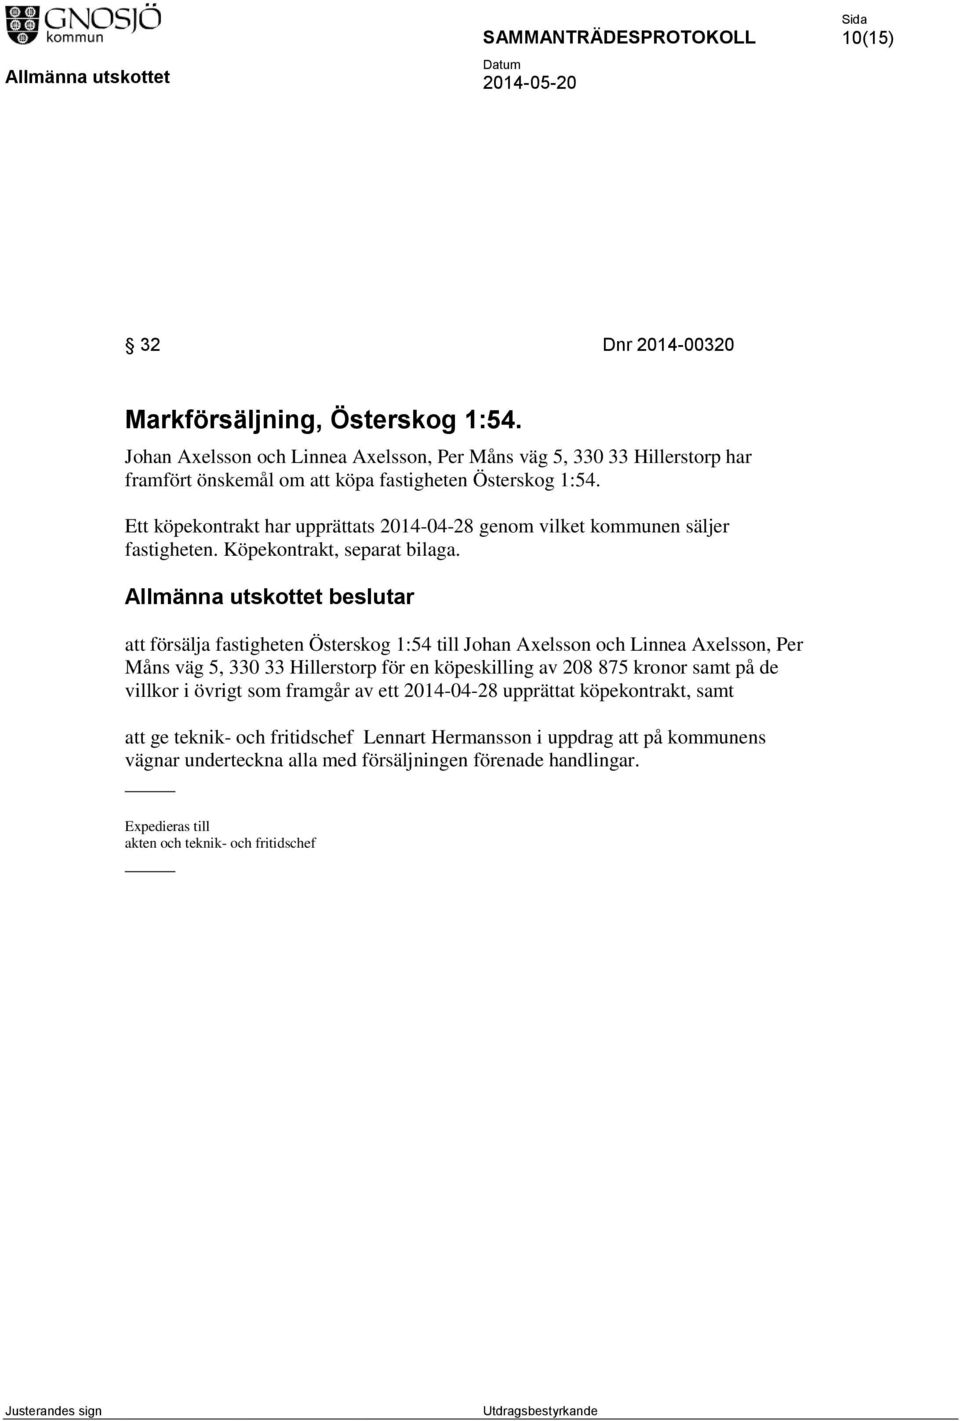 Allmänna utskottet beslutar att försälja fastigheten Österskog 1:54 till Johan Axelsson och Linnea Axelsson, Per Måns väg 5, 330 33 Hillerstorp för en köpeskilling av 208 875 kronor samt på